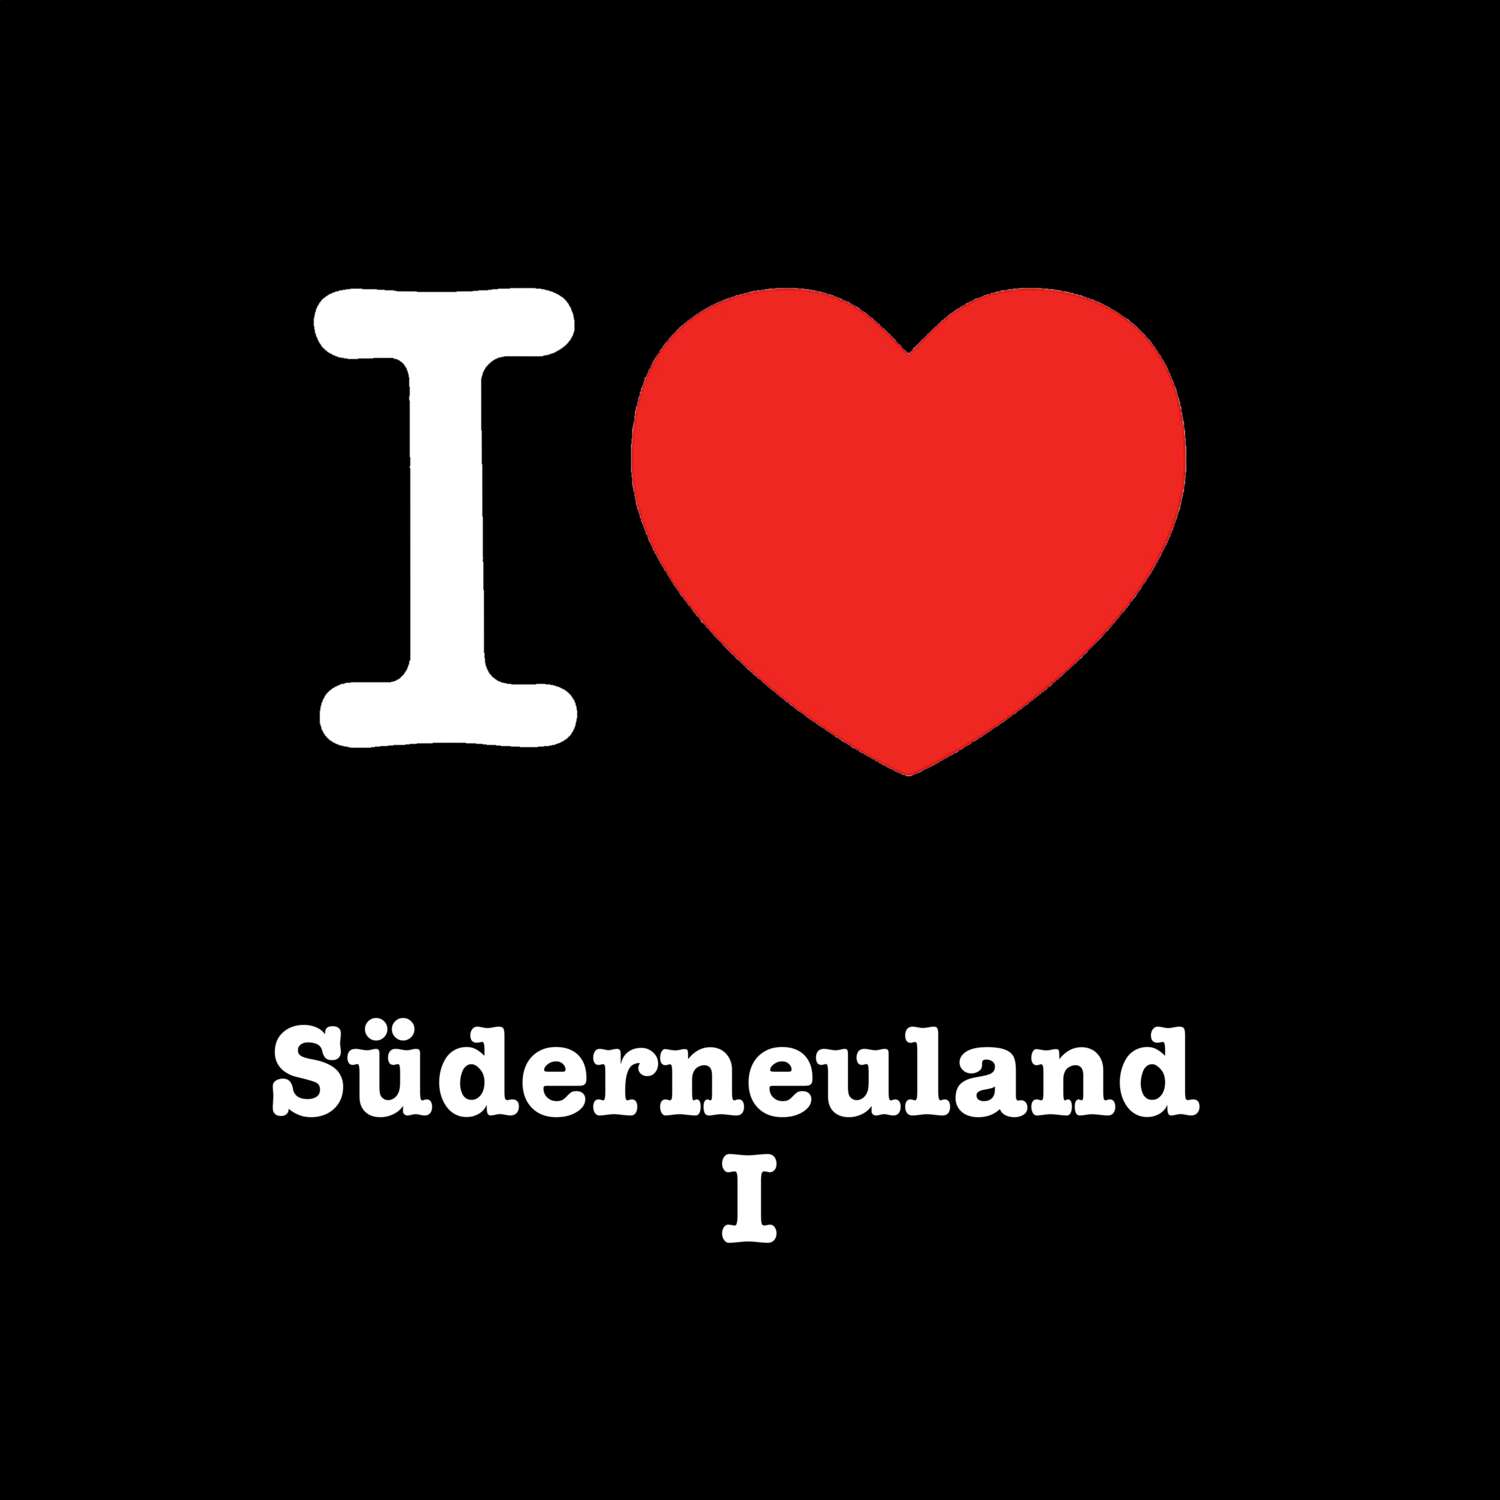 Süderneuland I T-Shirt »I love«